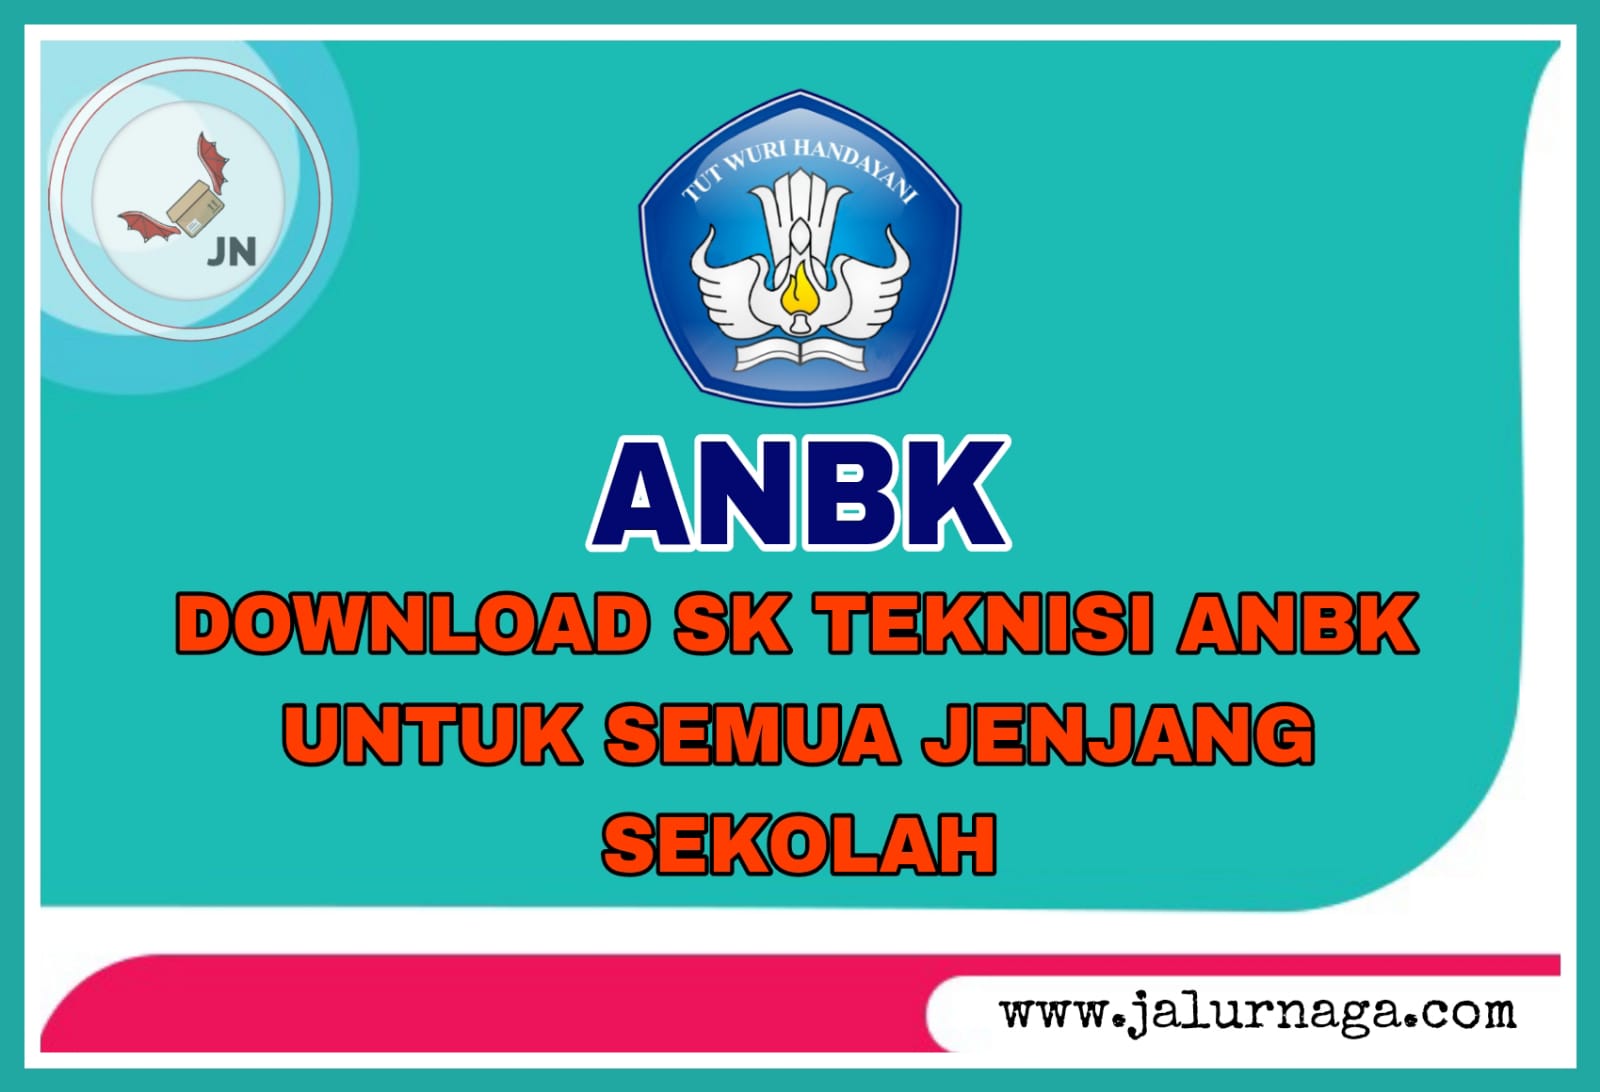 Download Contoh SK Teknisi ANBK